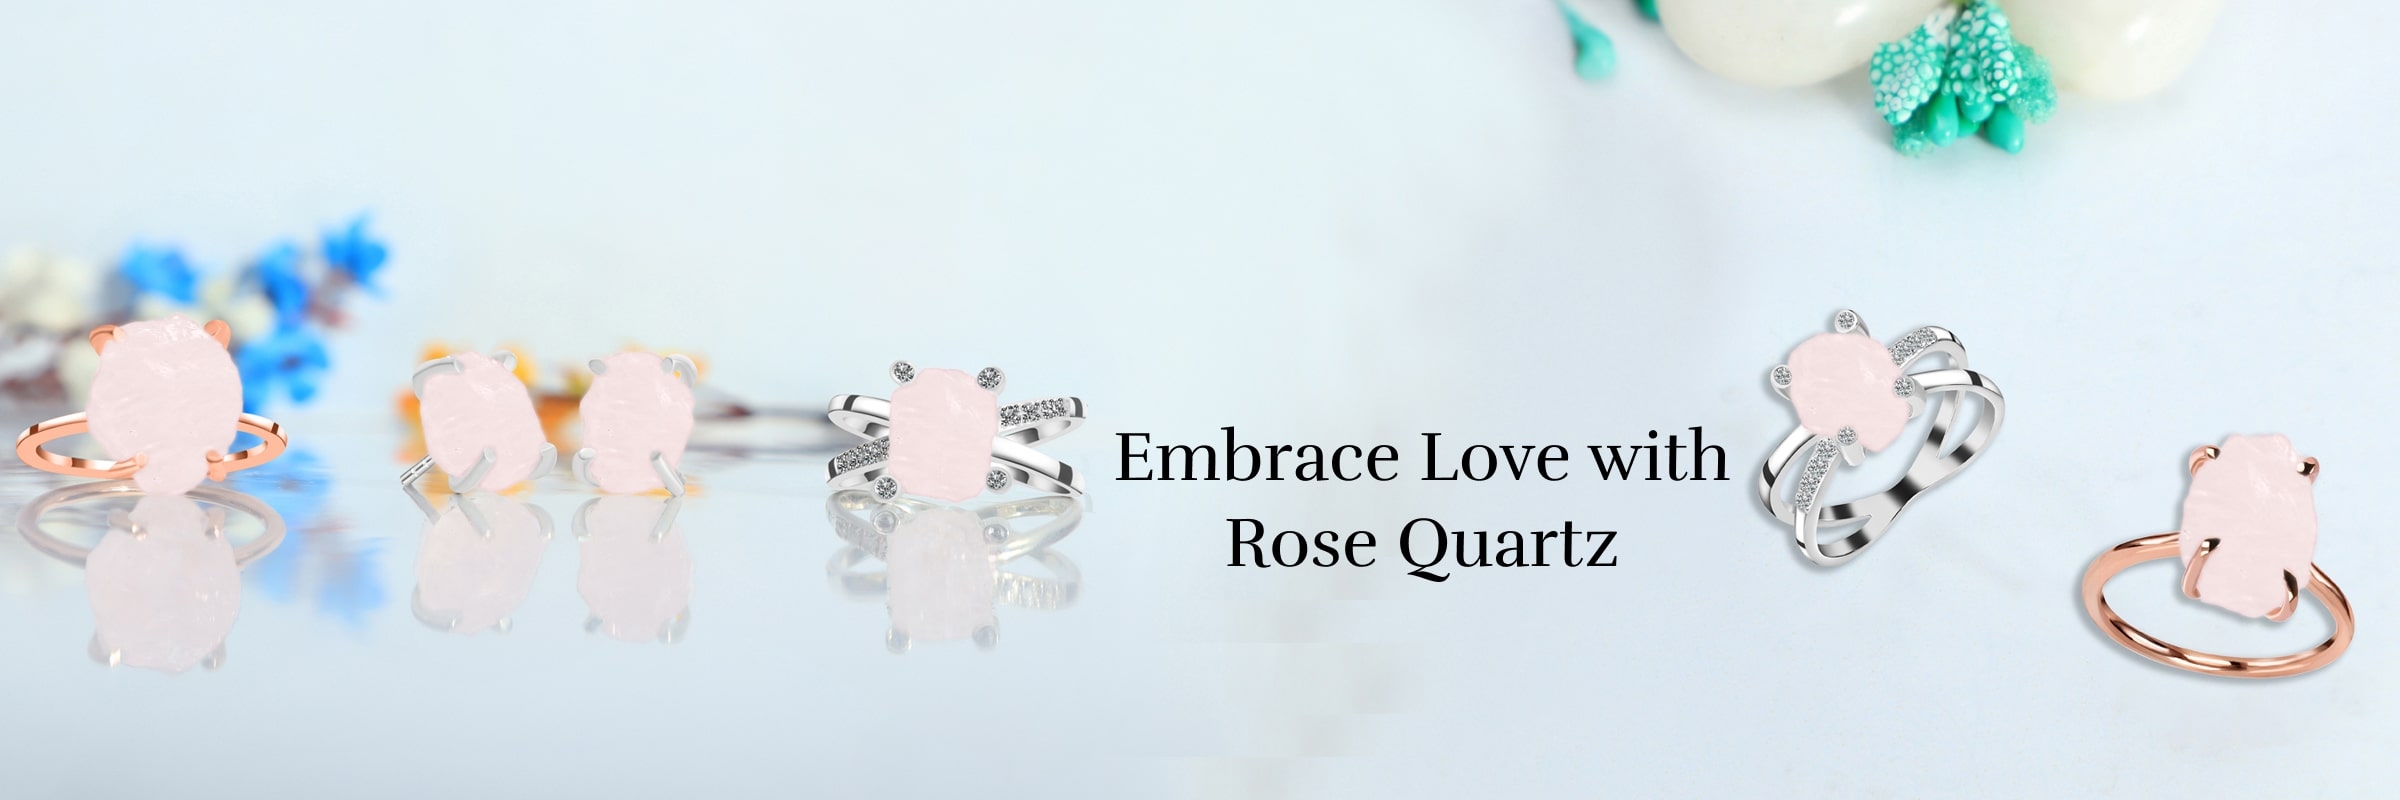 Rose Quartz